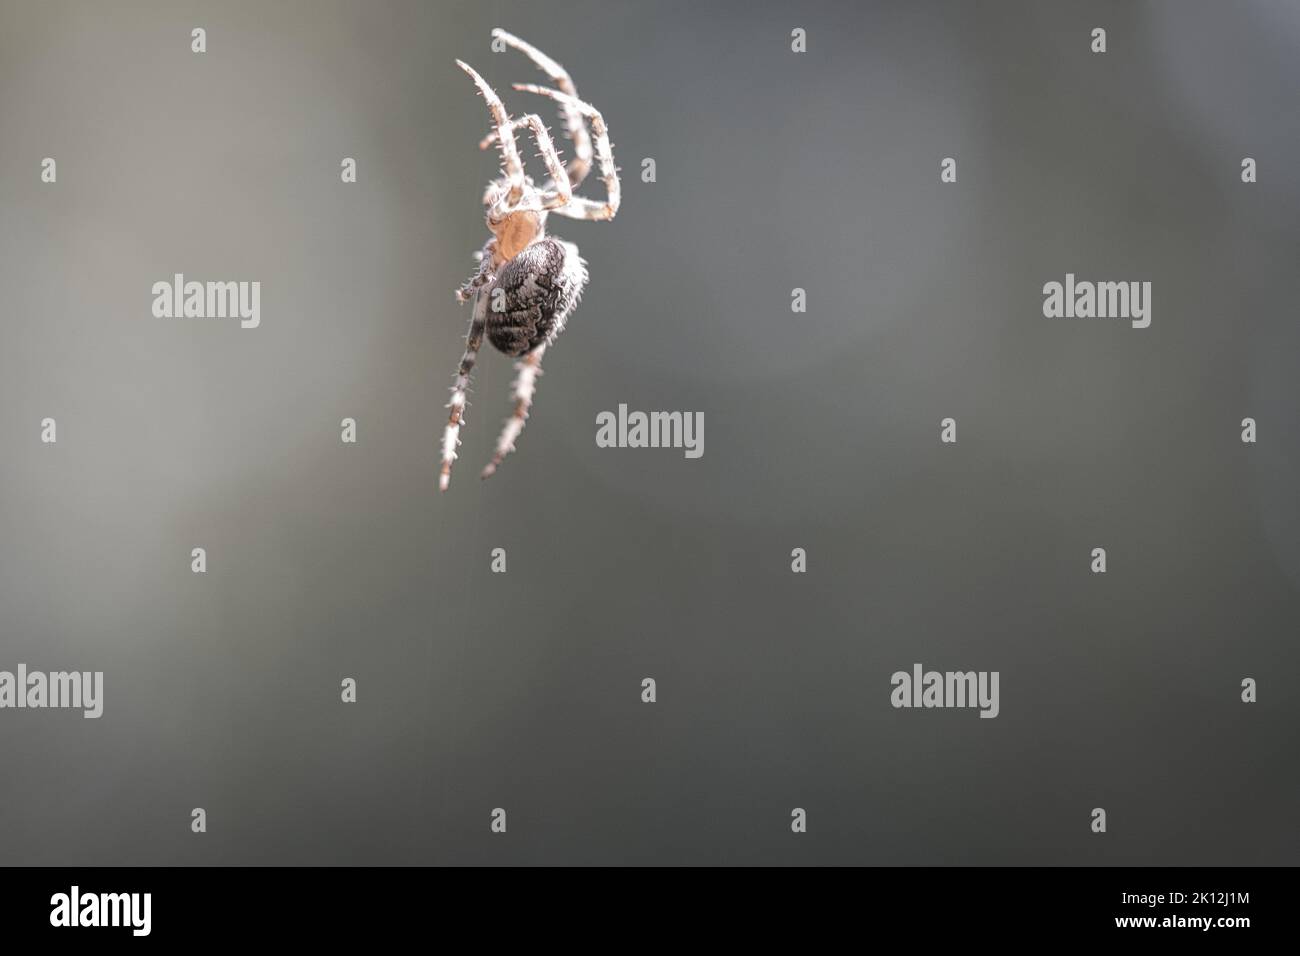 Crociera del ragno su una filettatura del ragno. Sfondo sfocato. Un cacciatore utile tra insetti. Arachnid. Foto di animali selvatici. Foto Stock